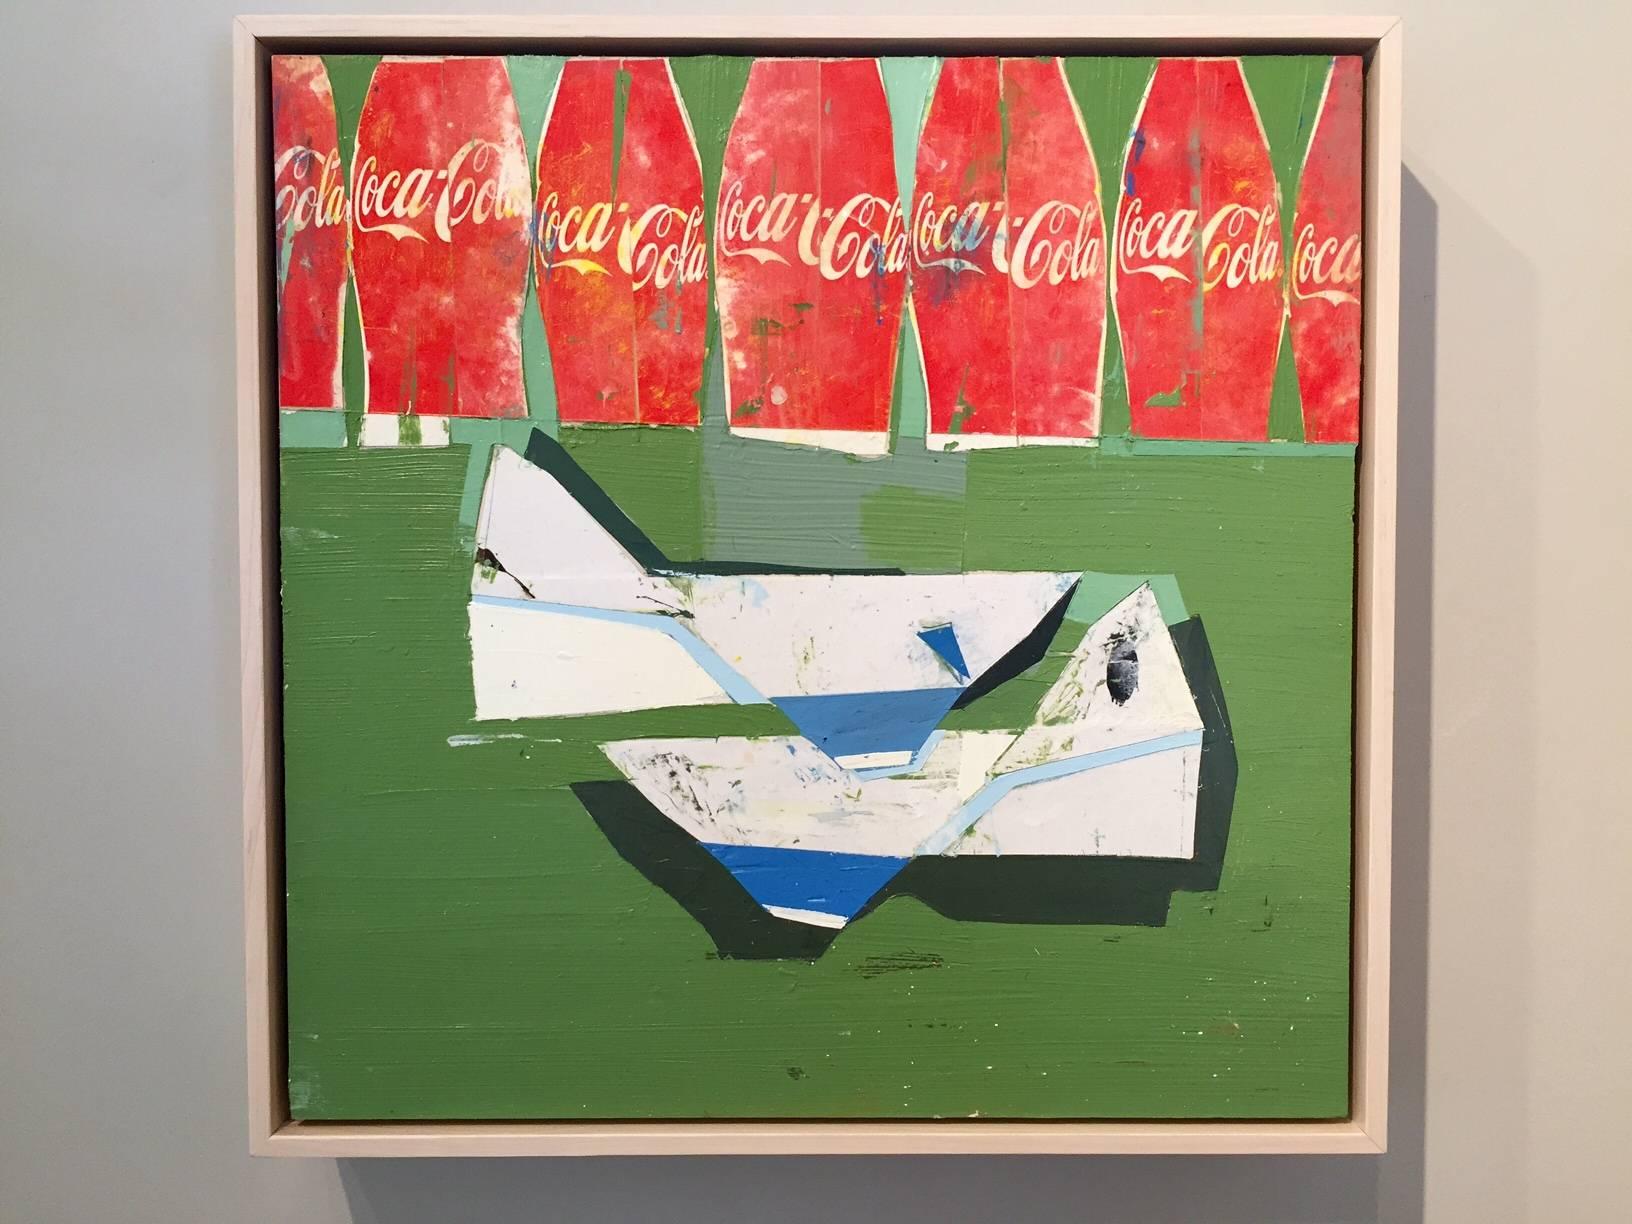 When We Were Children / Coke Work – Coca-Cola-Gemälde – Painting von Kim Frohsin